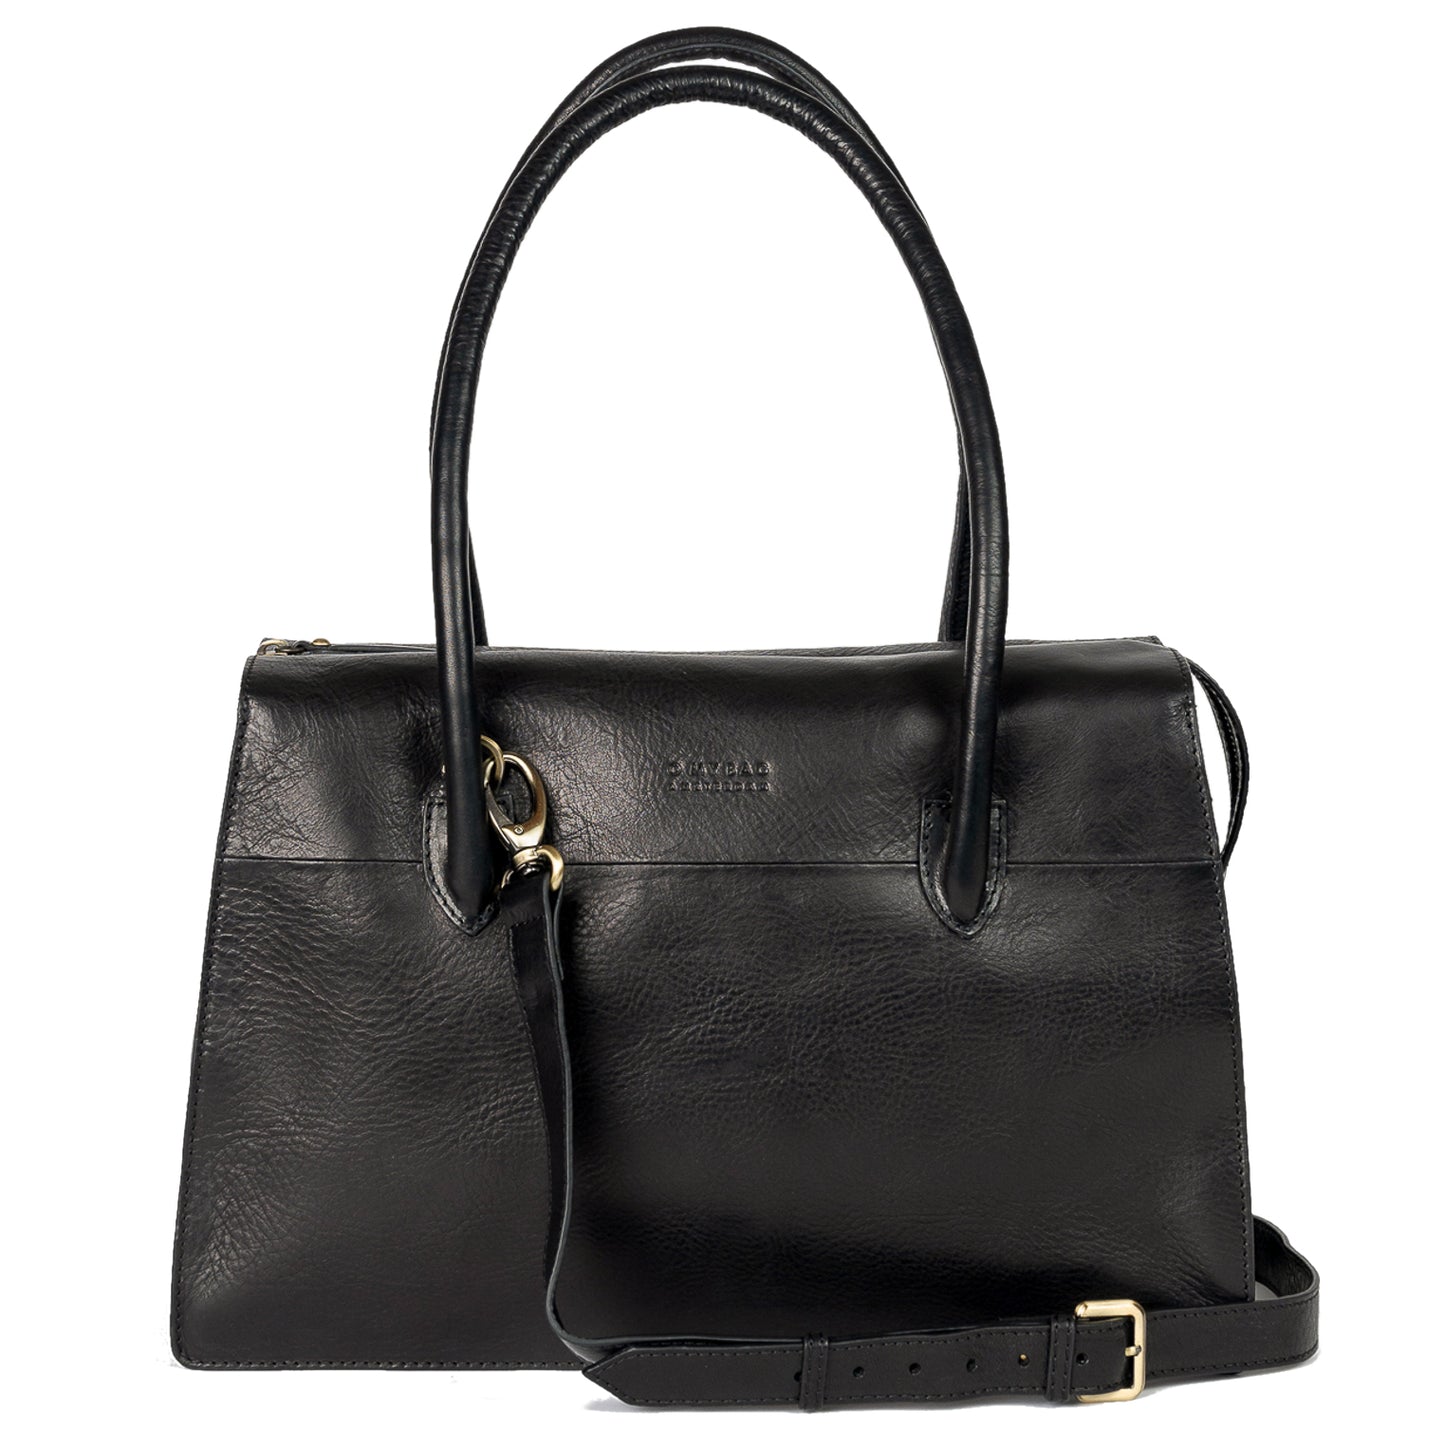 Kate women's handbag